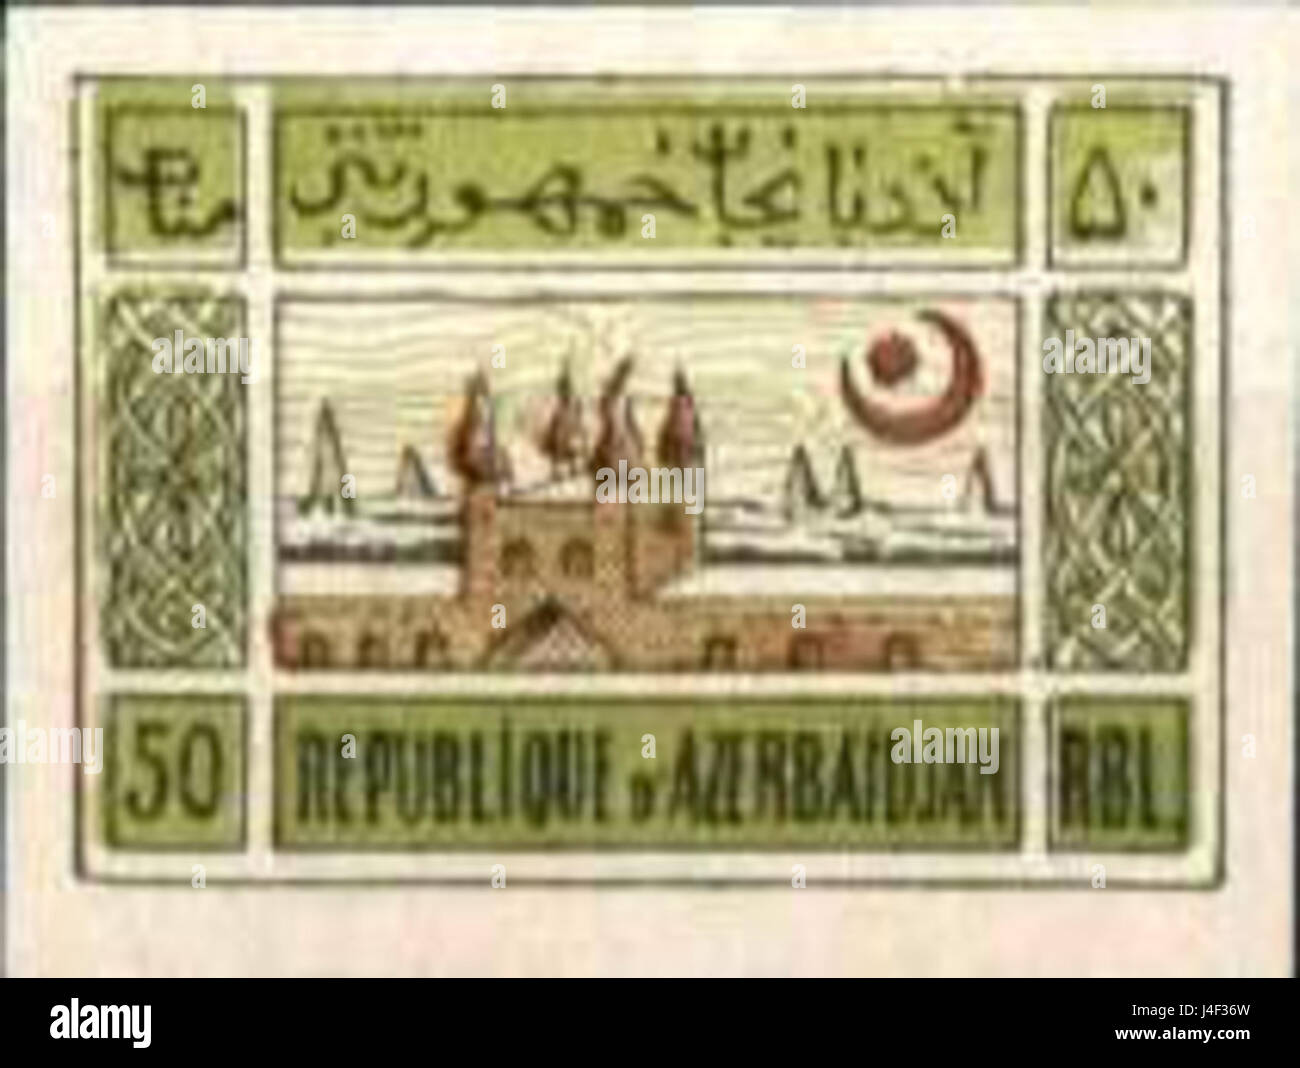 Aserbaidschan Demokratische Republik Briefmarke 50 rbl Stockfoto